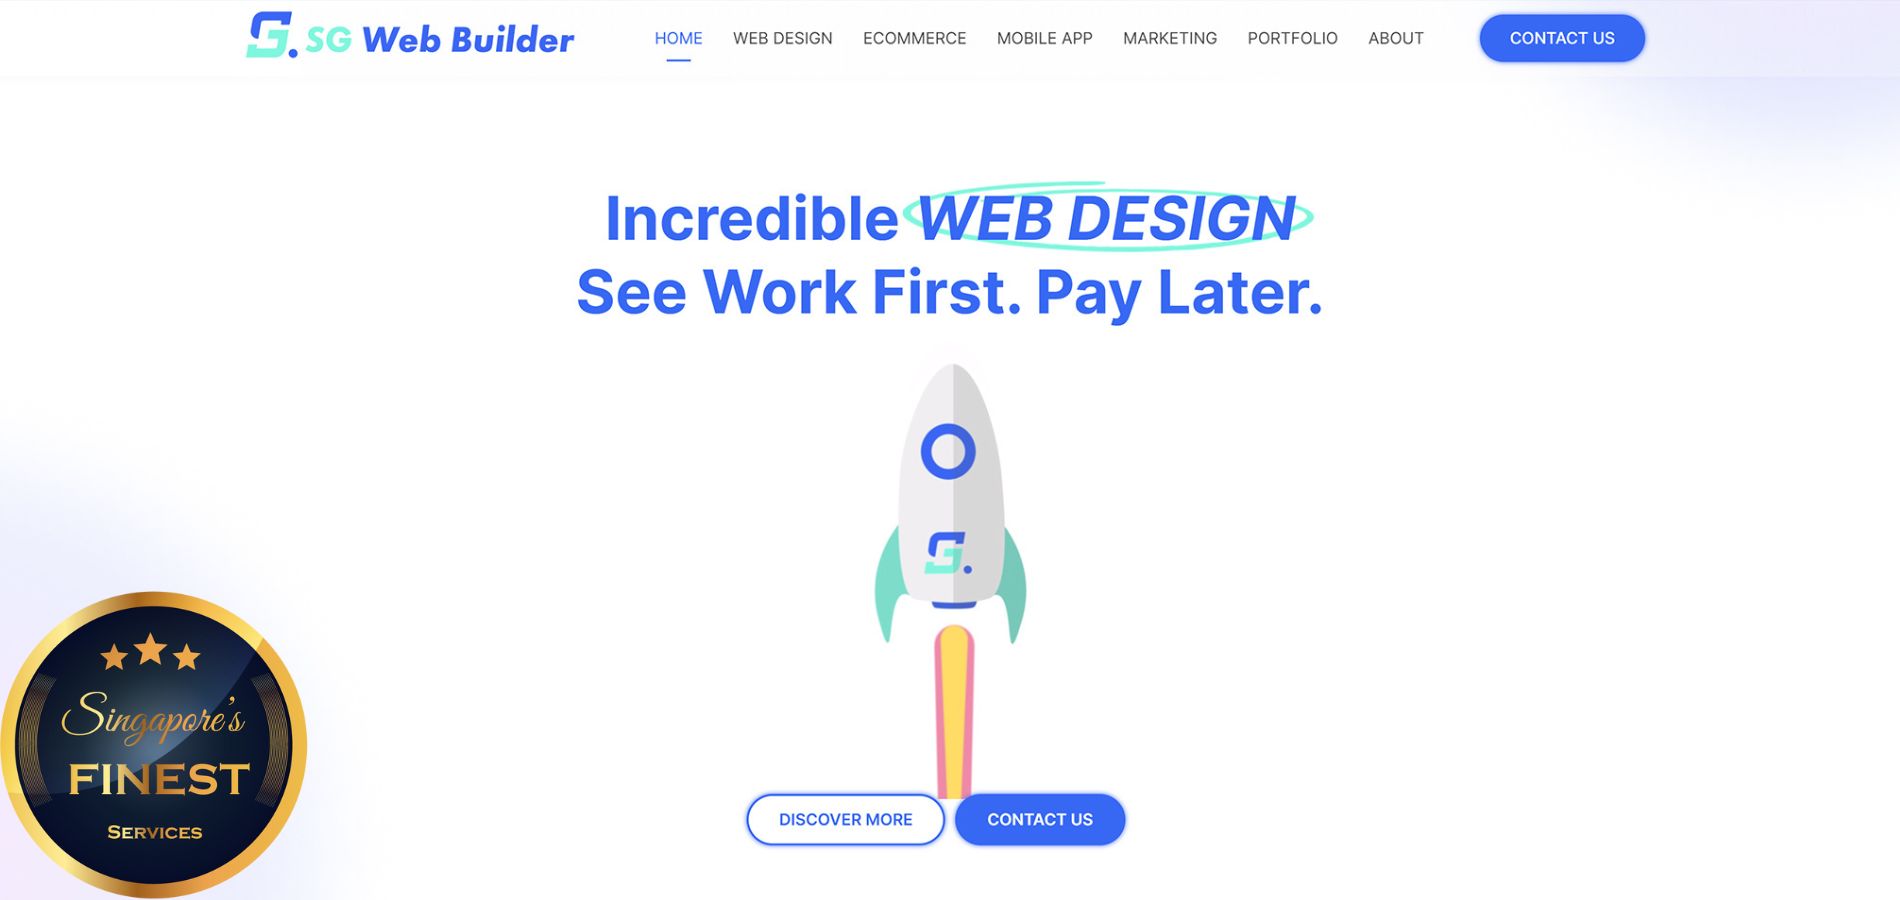 SG Web Builder - Web Designers Singapore